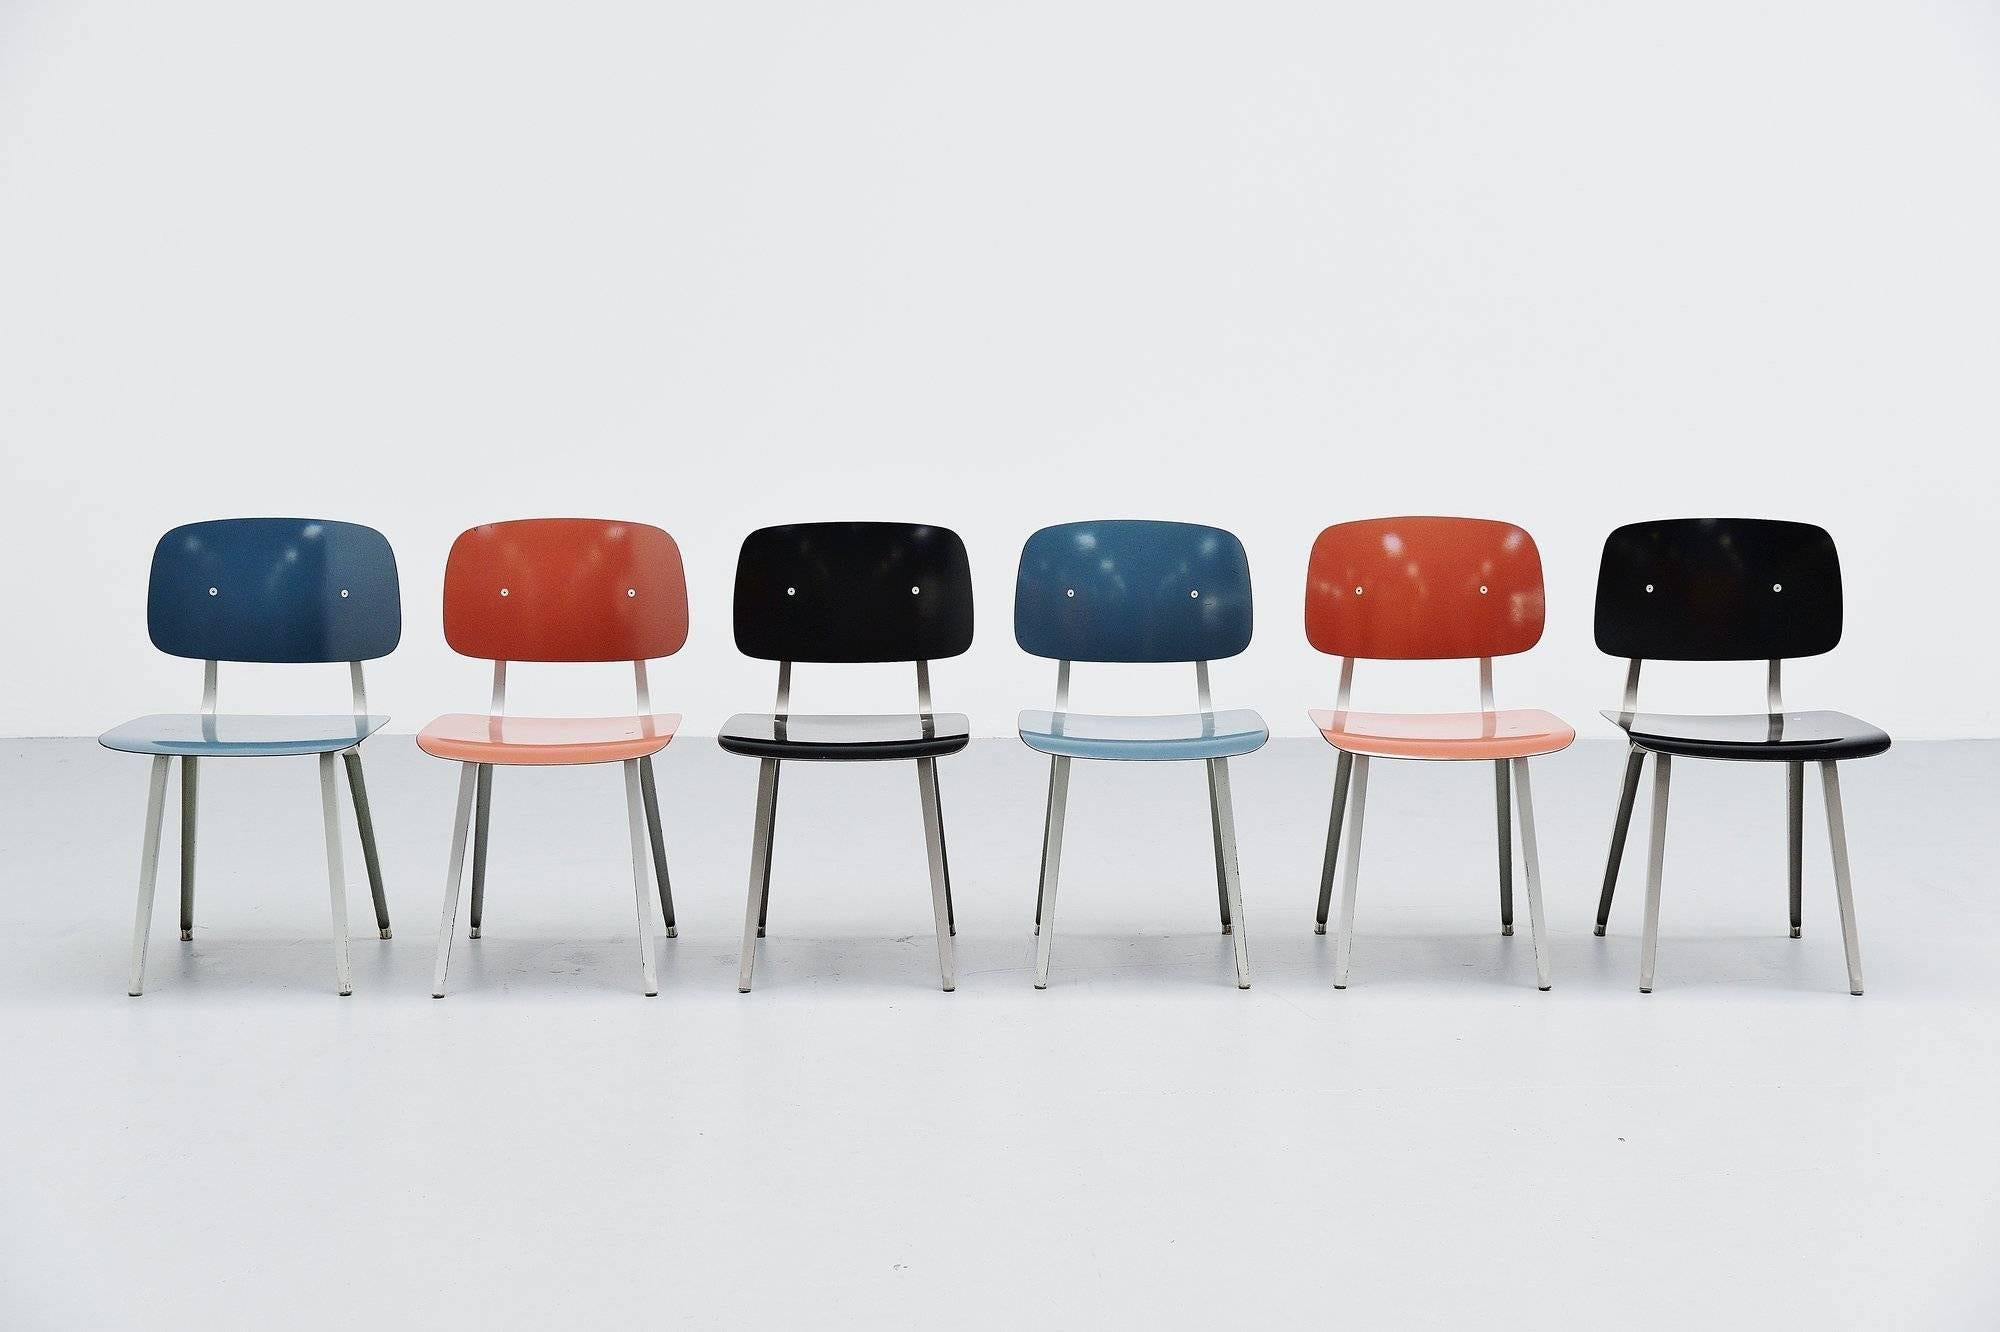 Schöner Satz von sechs Revolt-Stühlen, entworfen von Friso Kramer für Ahrend de Cirkel, Holland 1953. Obwohl der Revolt-Stuhl bereits 1953 entworfen wurde, begann die Produktion erst 1958. Die Stühle haben ein gefaltetes Metallgestell, das sehr